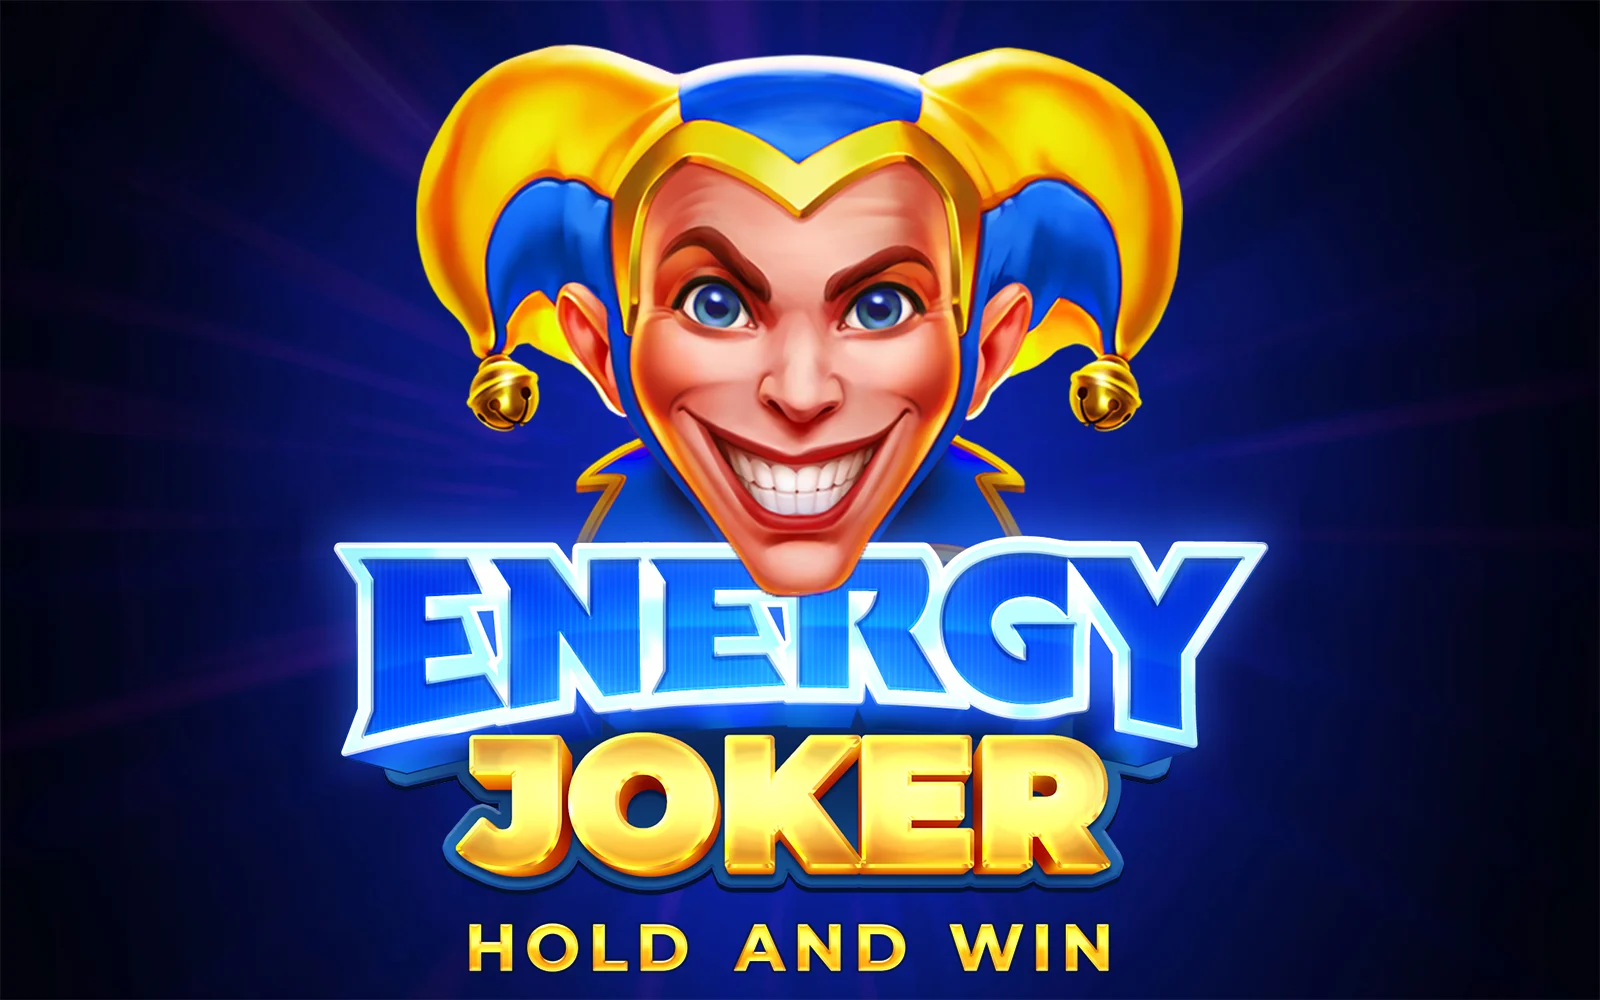 Spielen Sie Energy Joker: Hold and Win auf Starcasino.be-Online-Casino